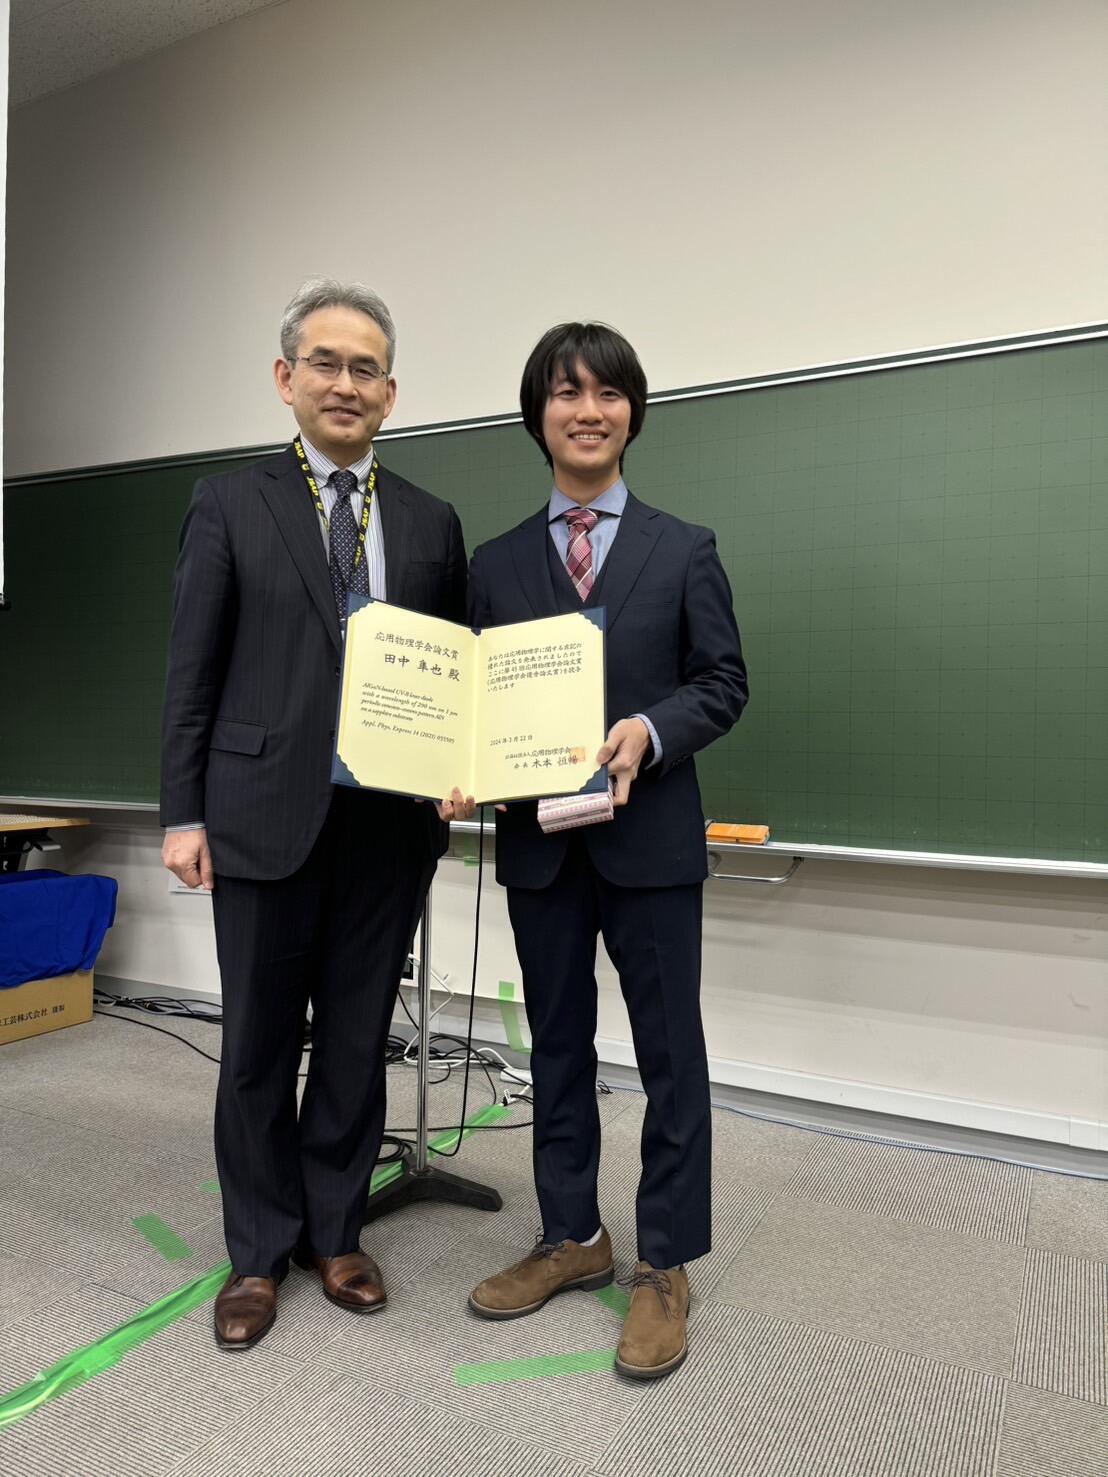 グループを代表して賞状を受け取る田中さん（右）と、応用物理学会の木本恒暢会長